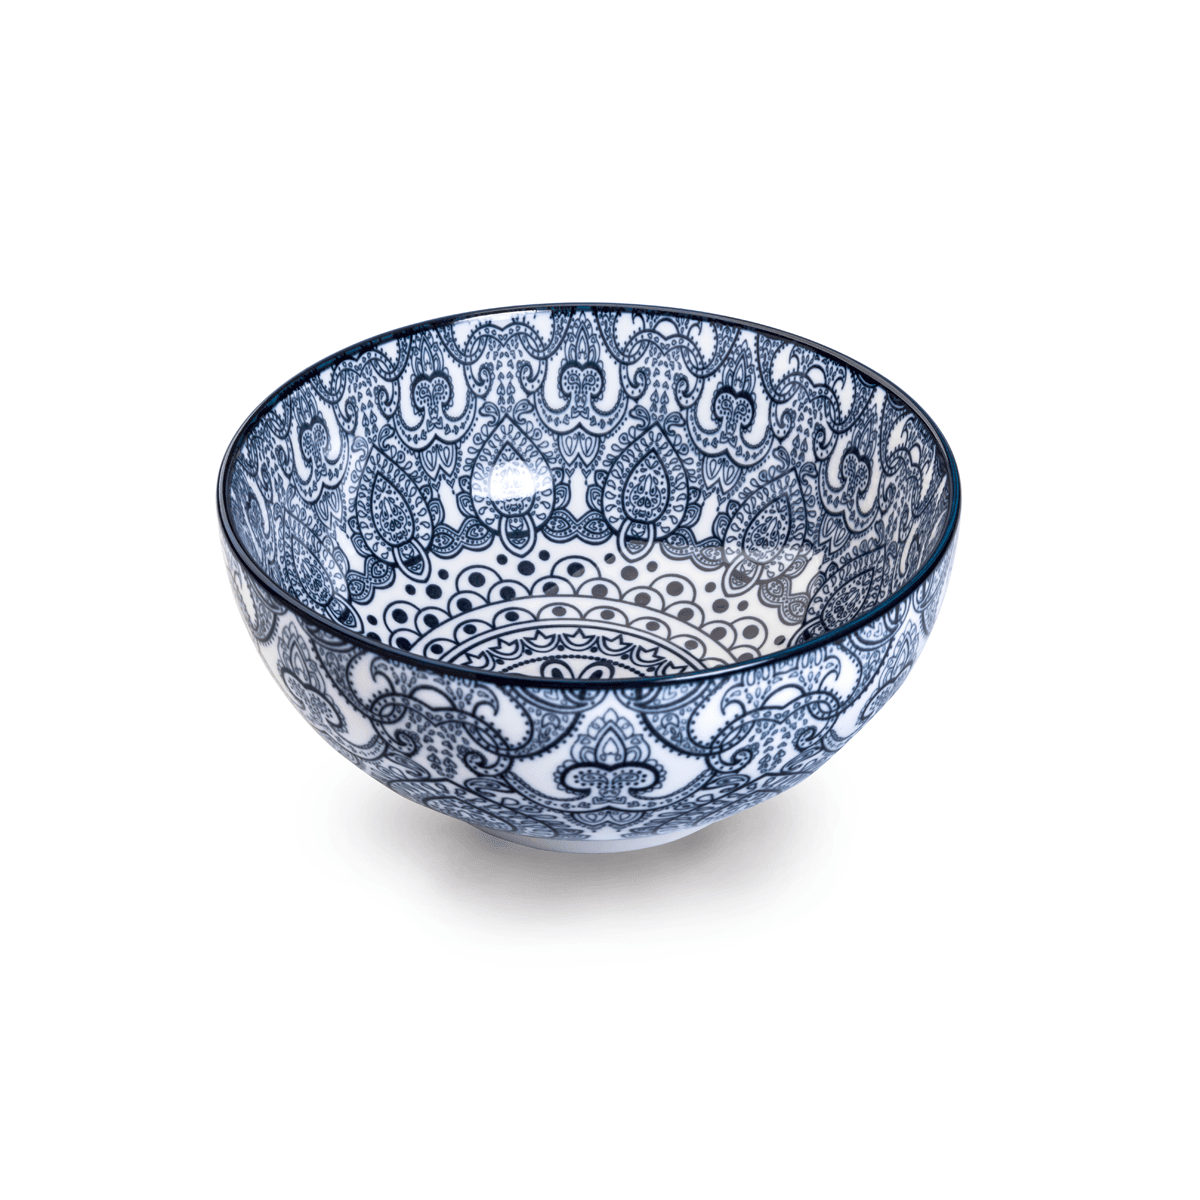 Che Brucia Arabesque Blue Porcelain Bowl 17.4 cm / 7" Blue Ivory Porcelain